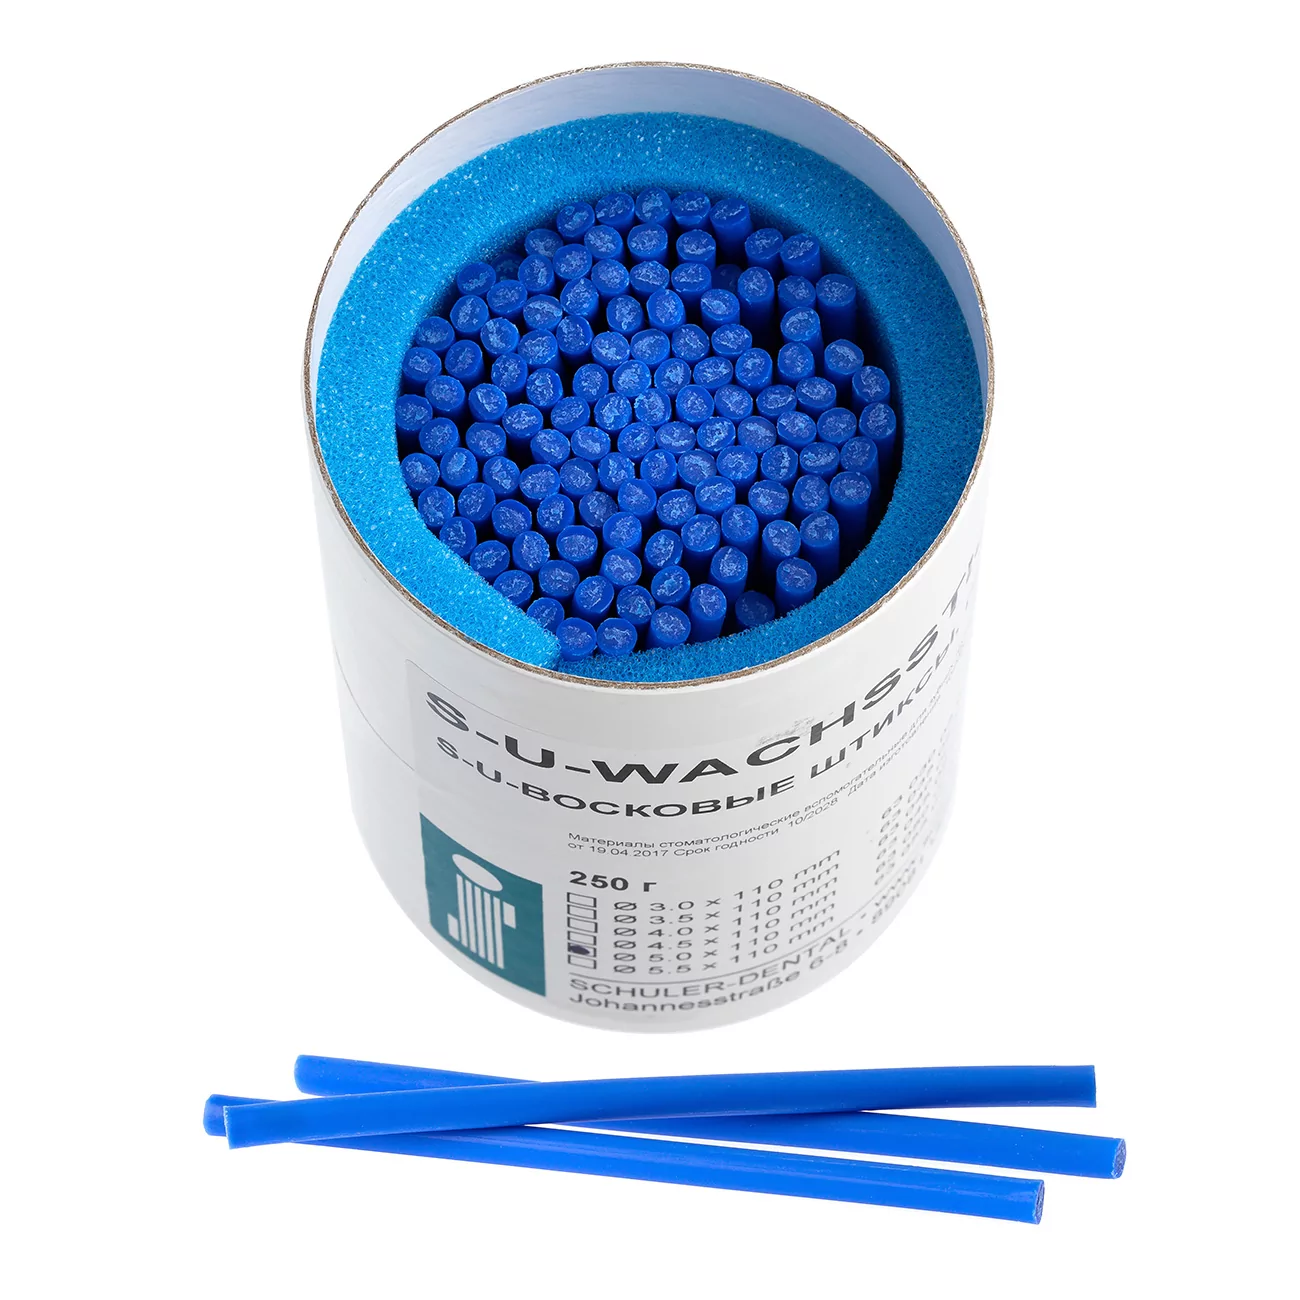 Восковые штиксы S-U-WACHSSTICKS, голубые, 5,0 мм, длина 110 мм, упаковка 250 г, 63050029